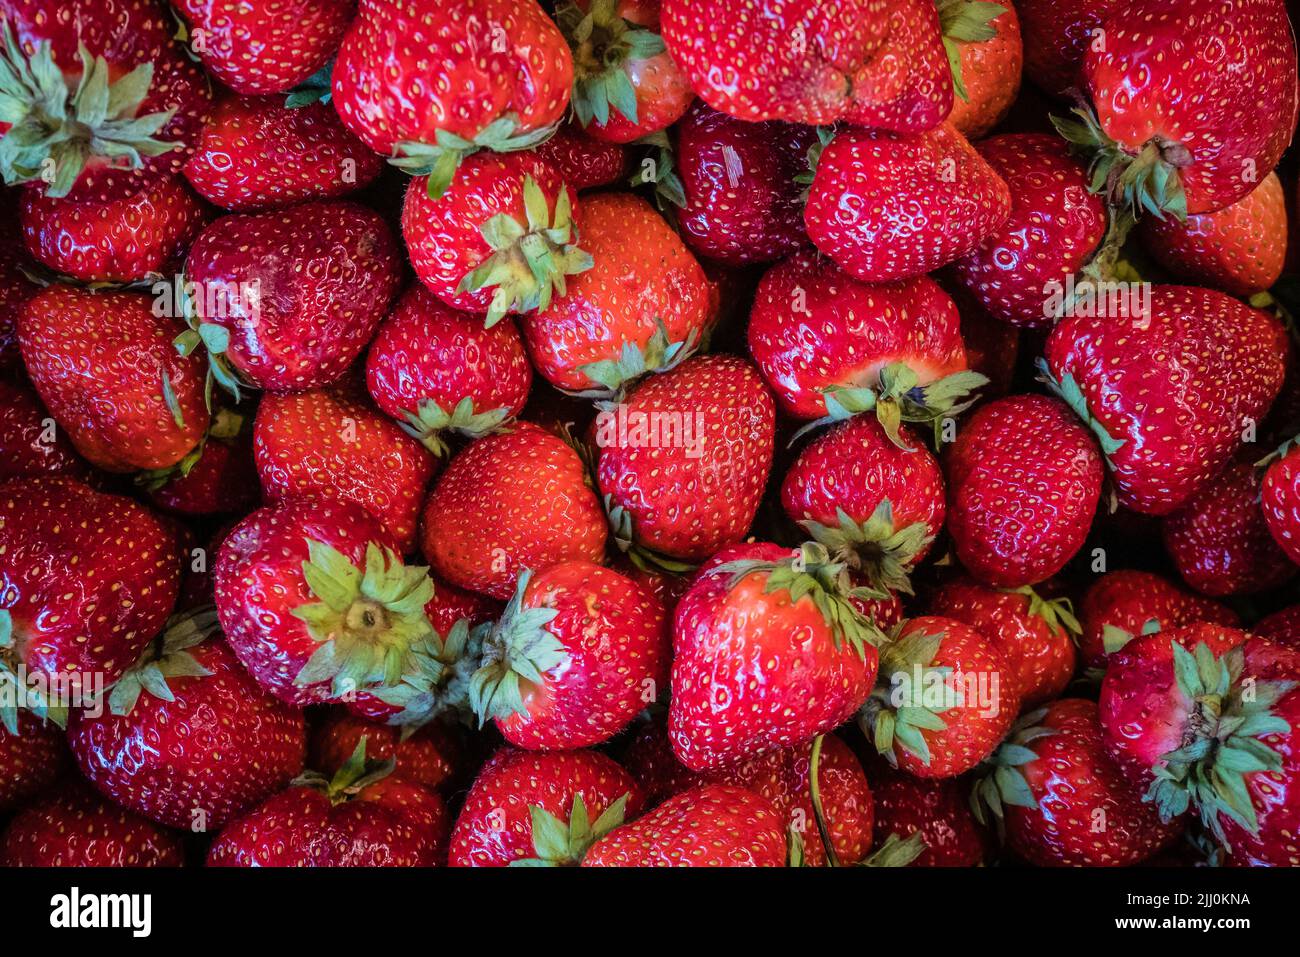 local organic red strawberries Stock Photo